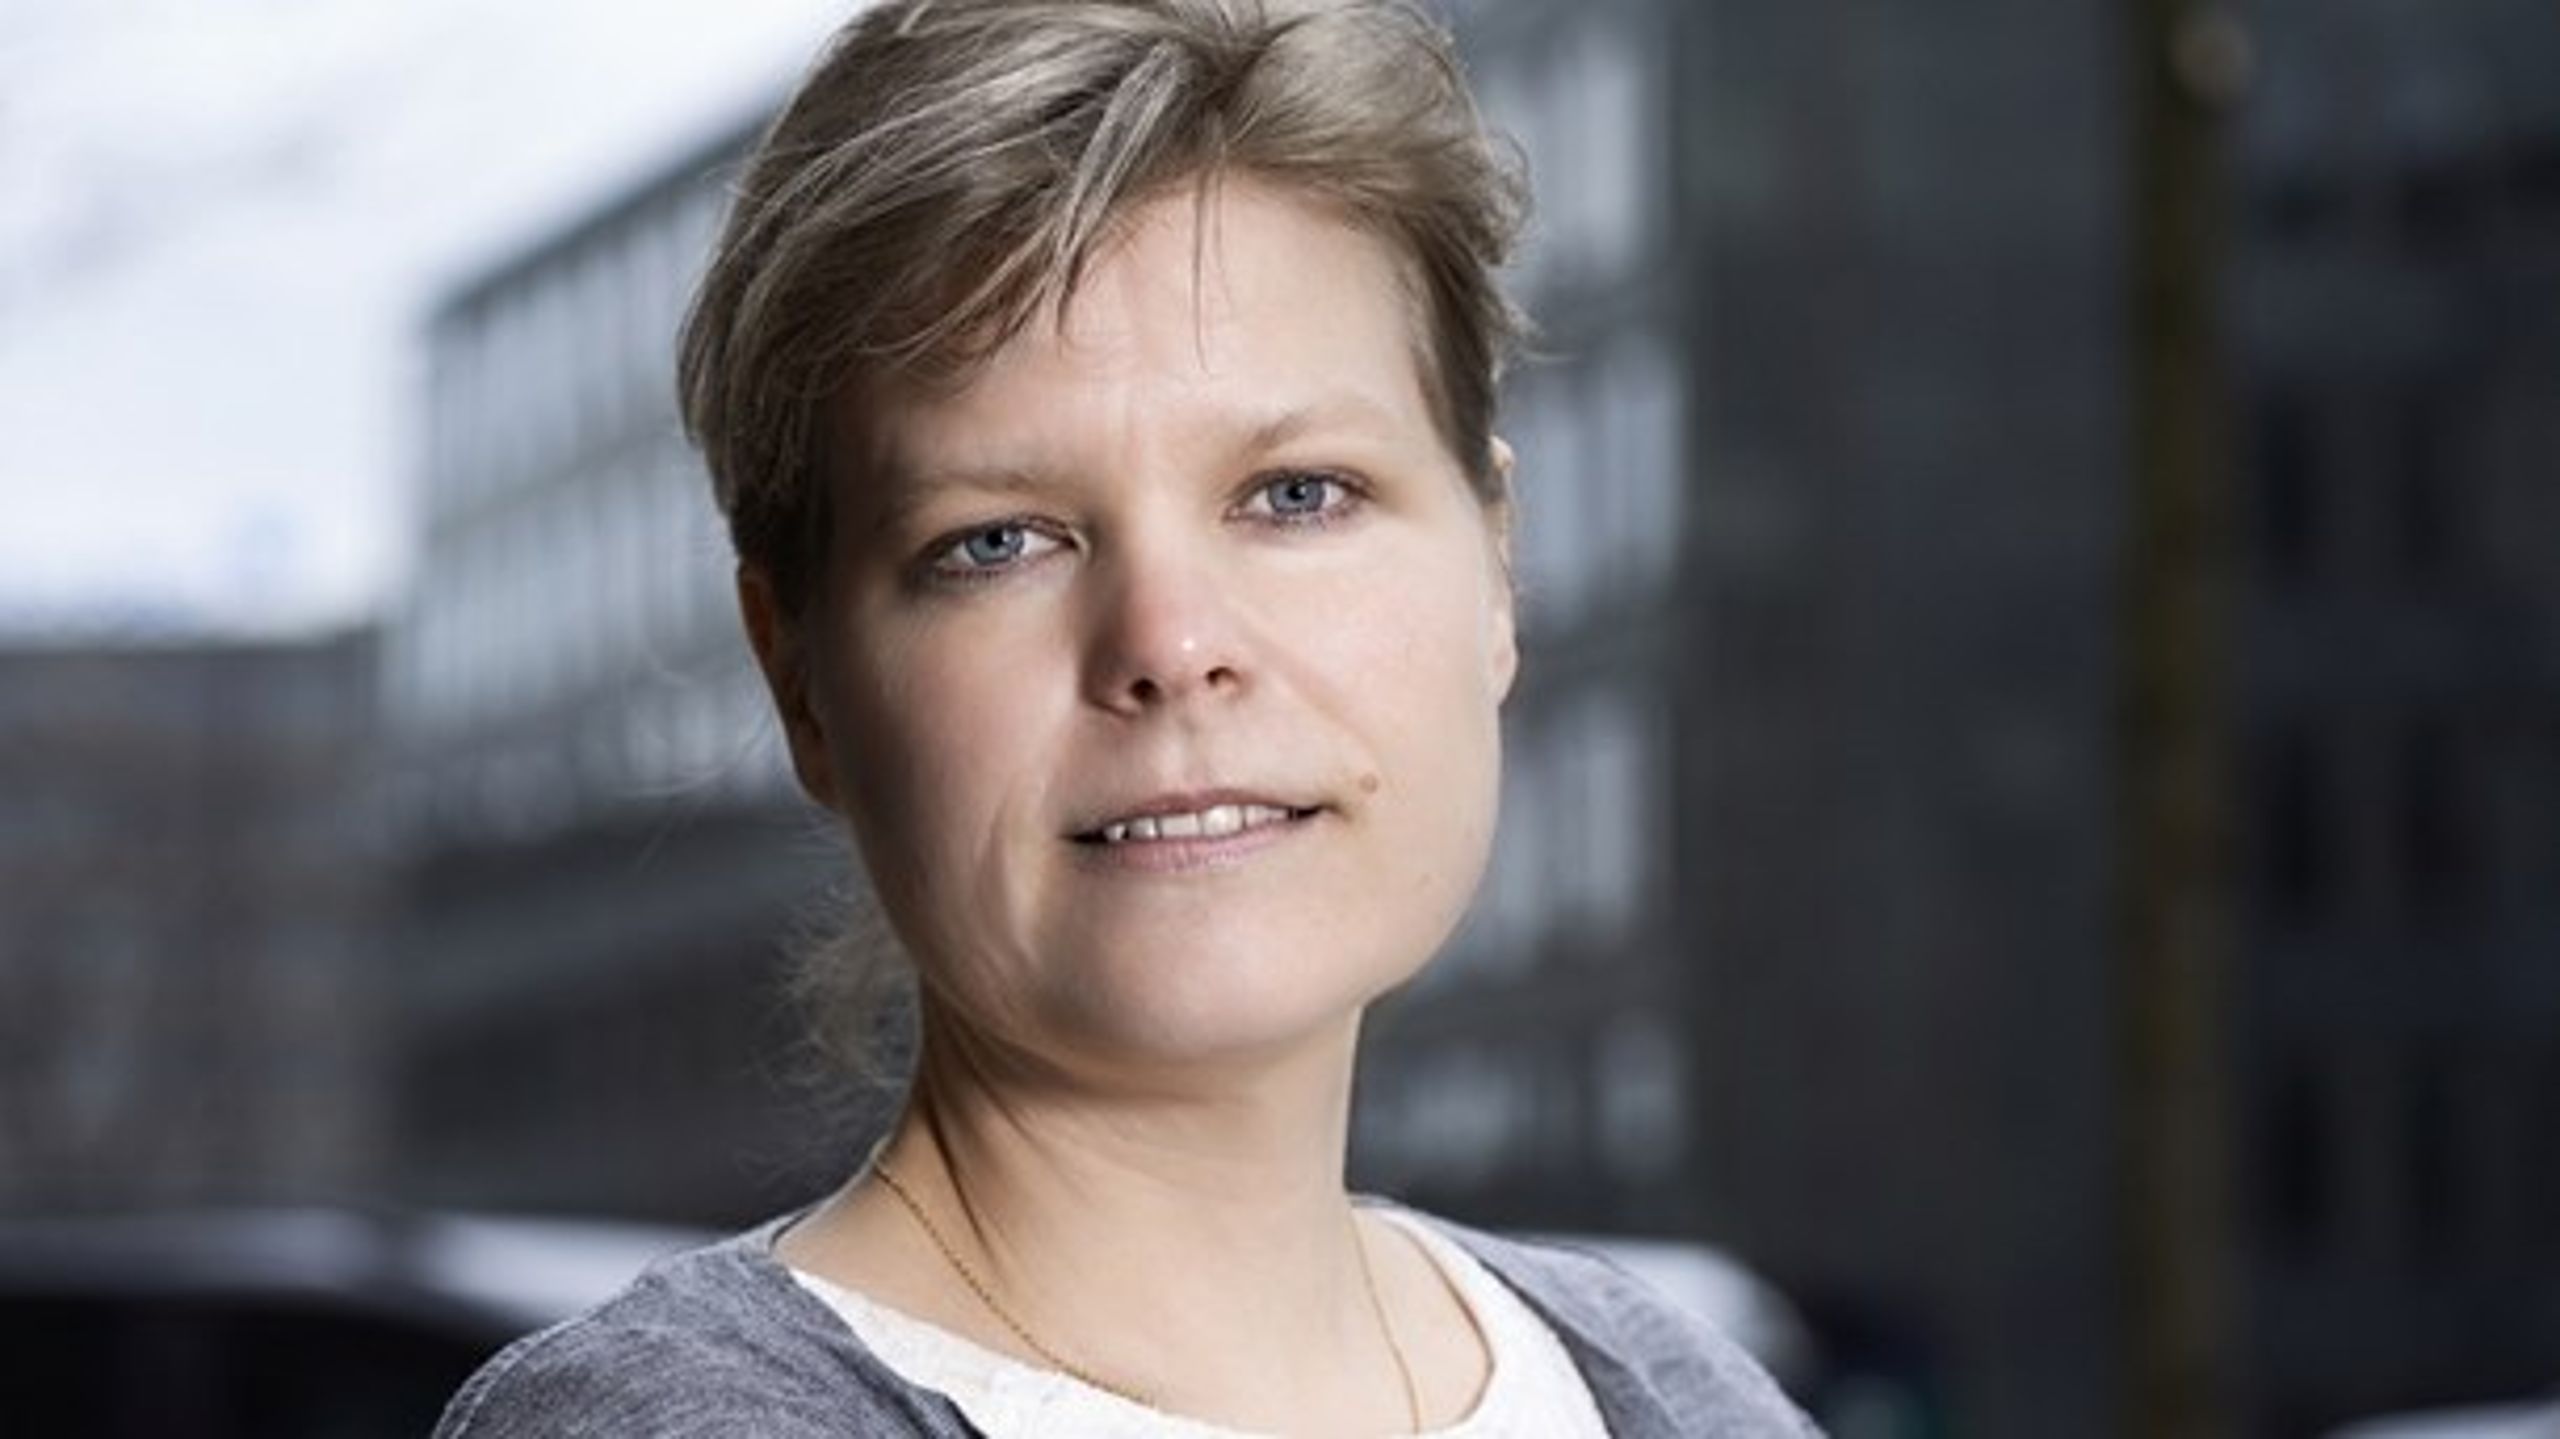 Vi skal prioritere fælles regler og praksis for fødevarekontrol fremfor nationale særregler og enegang, mener Lotte Engbæk Larsen.